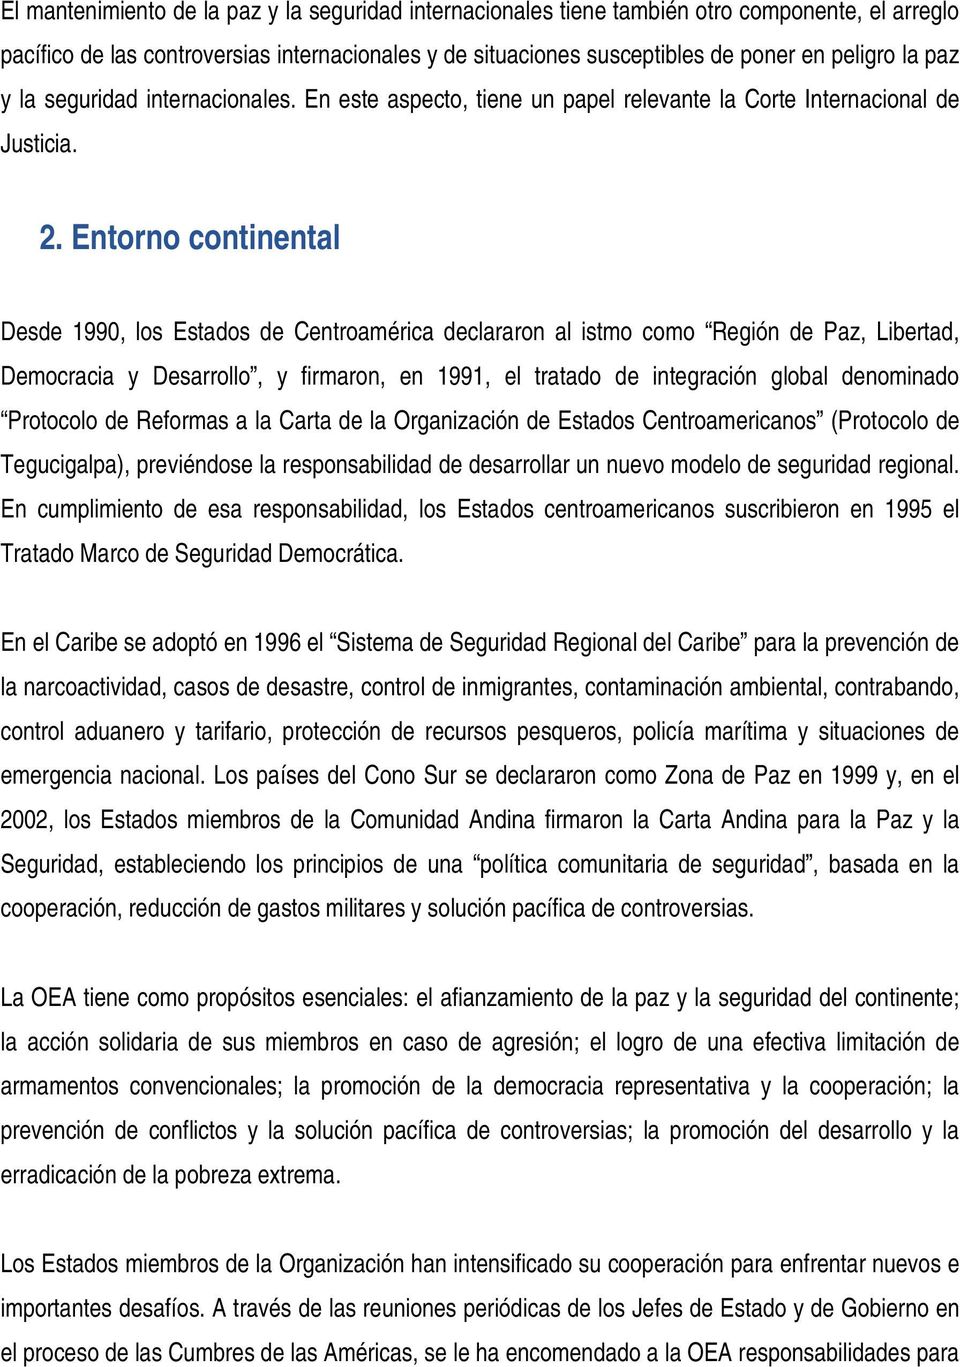 Entorno continental Desde 1990, los Estados de Centroamérica declararon al istmo como Región de Paz, Libertad, Democracia y Desarrollo, y firmaron, en 1991, el tratado de integración global